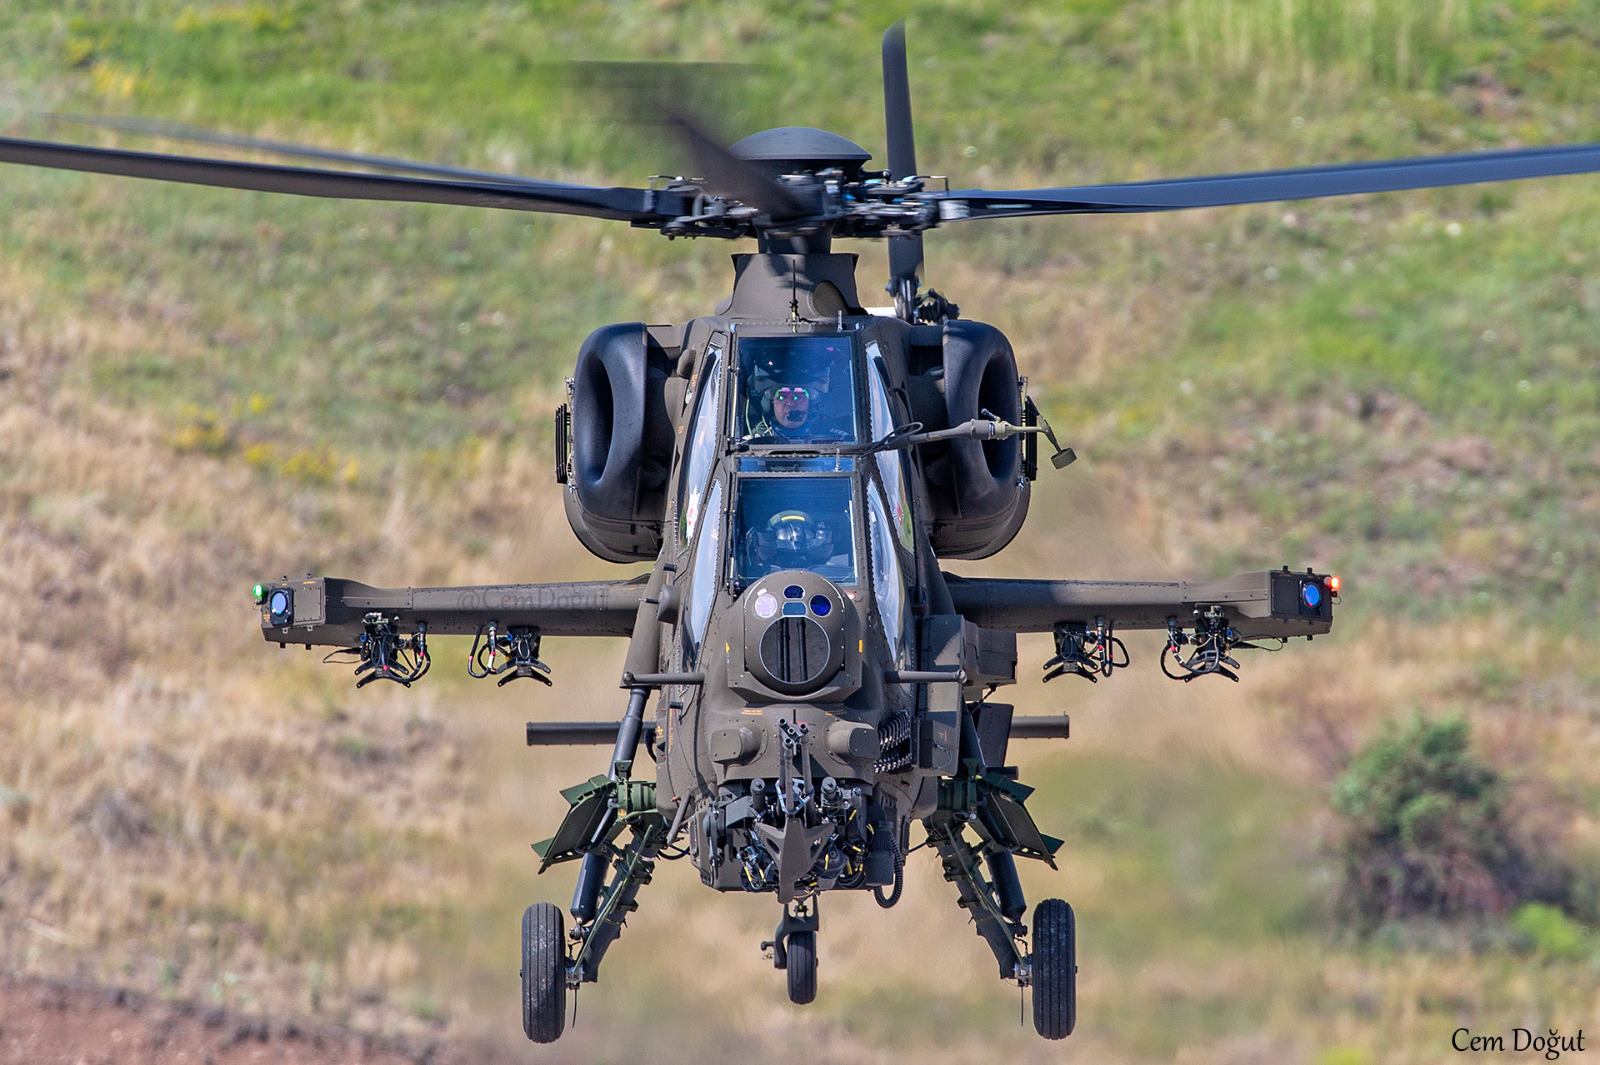 Türk Kara Kuvvetleri 57’nci T129 ATAK Helikopterini Teslim Aldı!